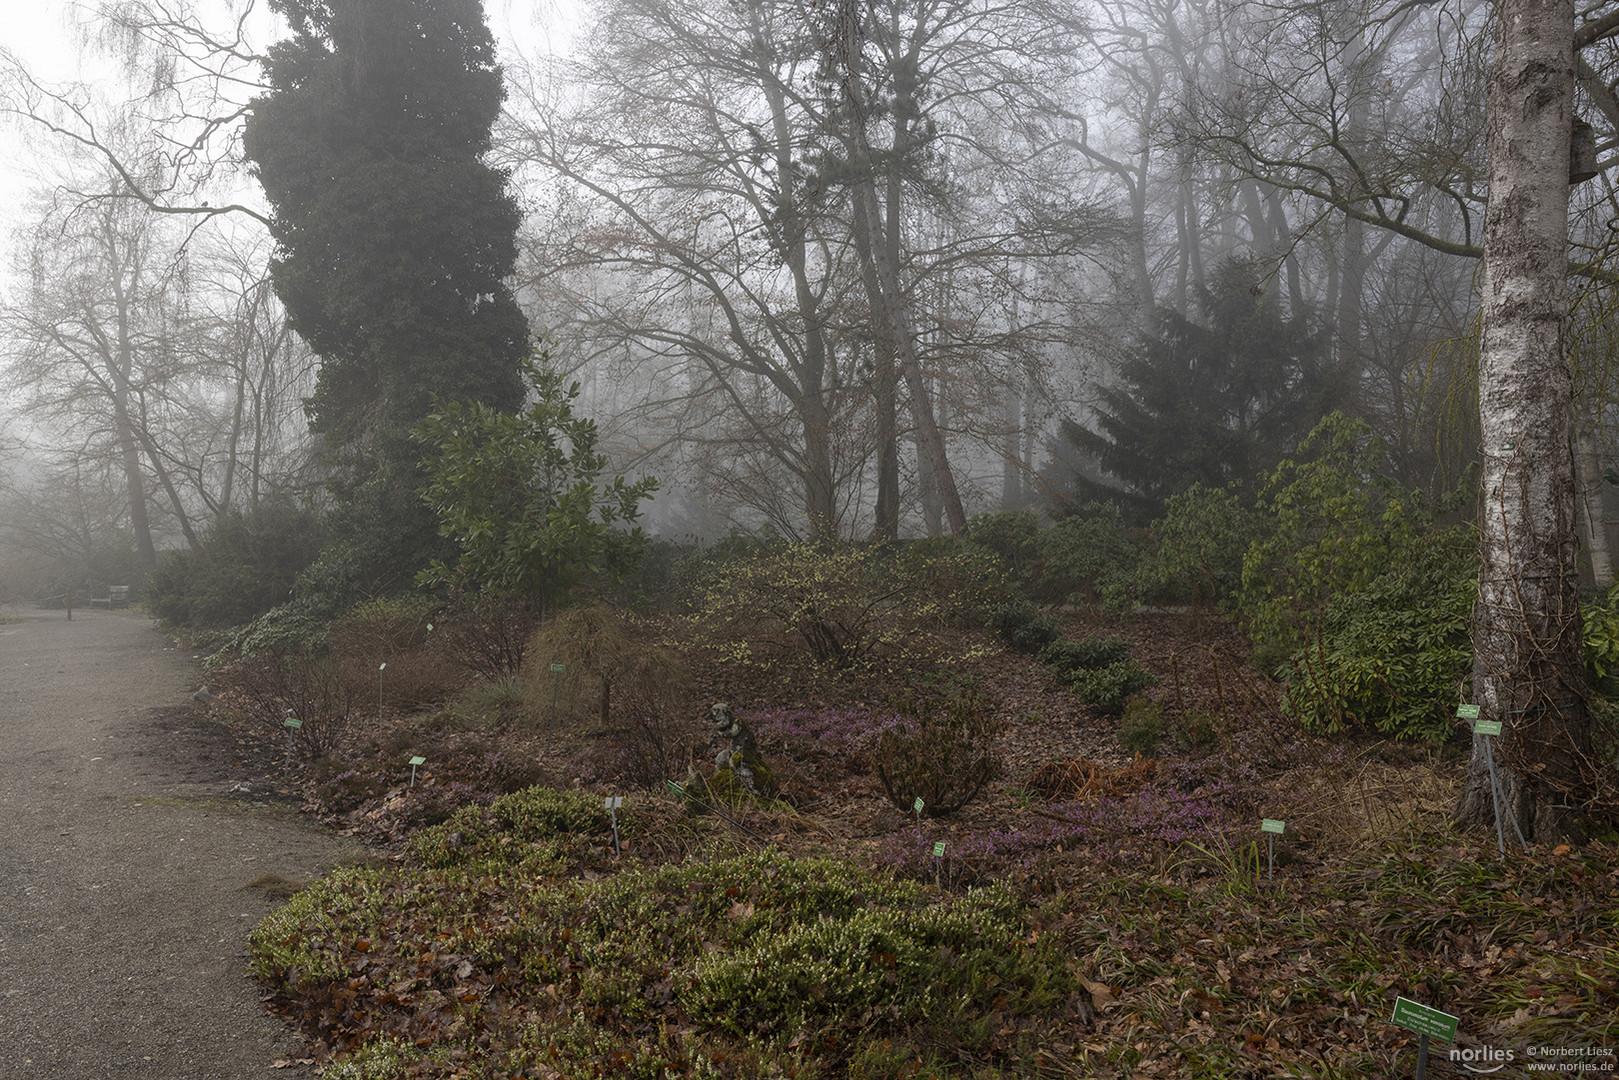 Rhododendrongarten im Nebel